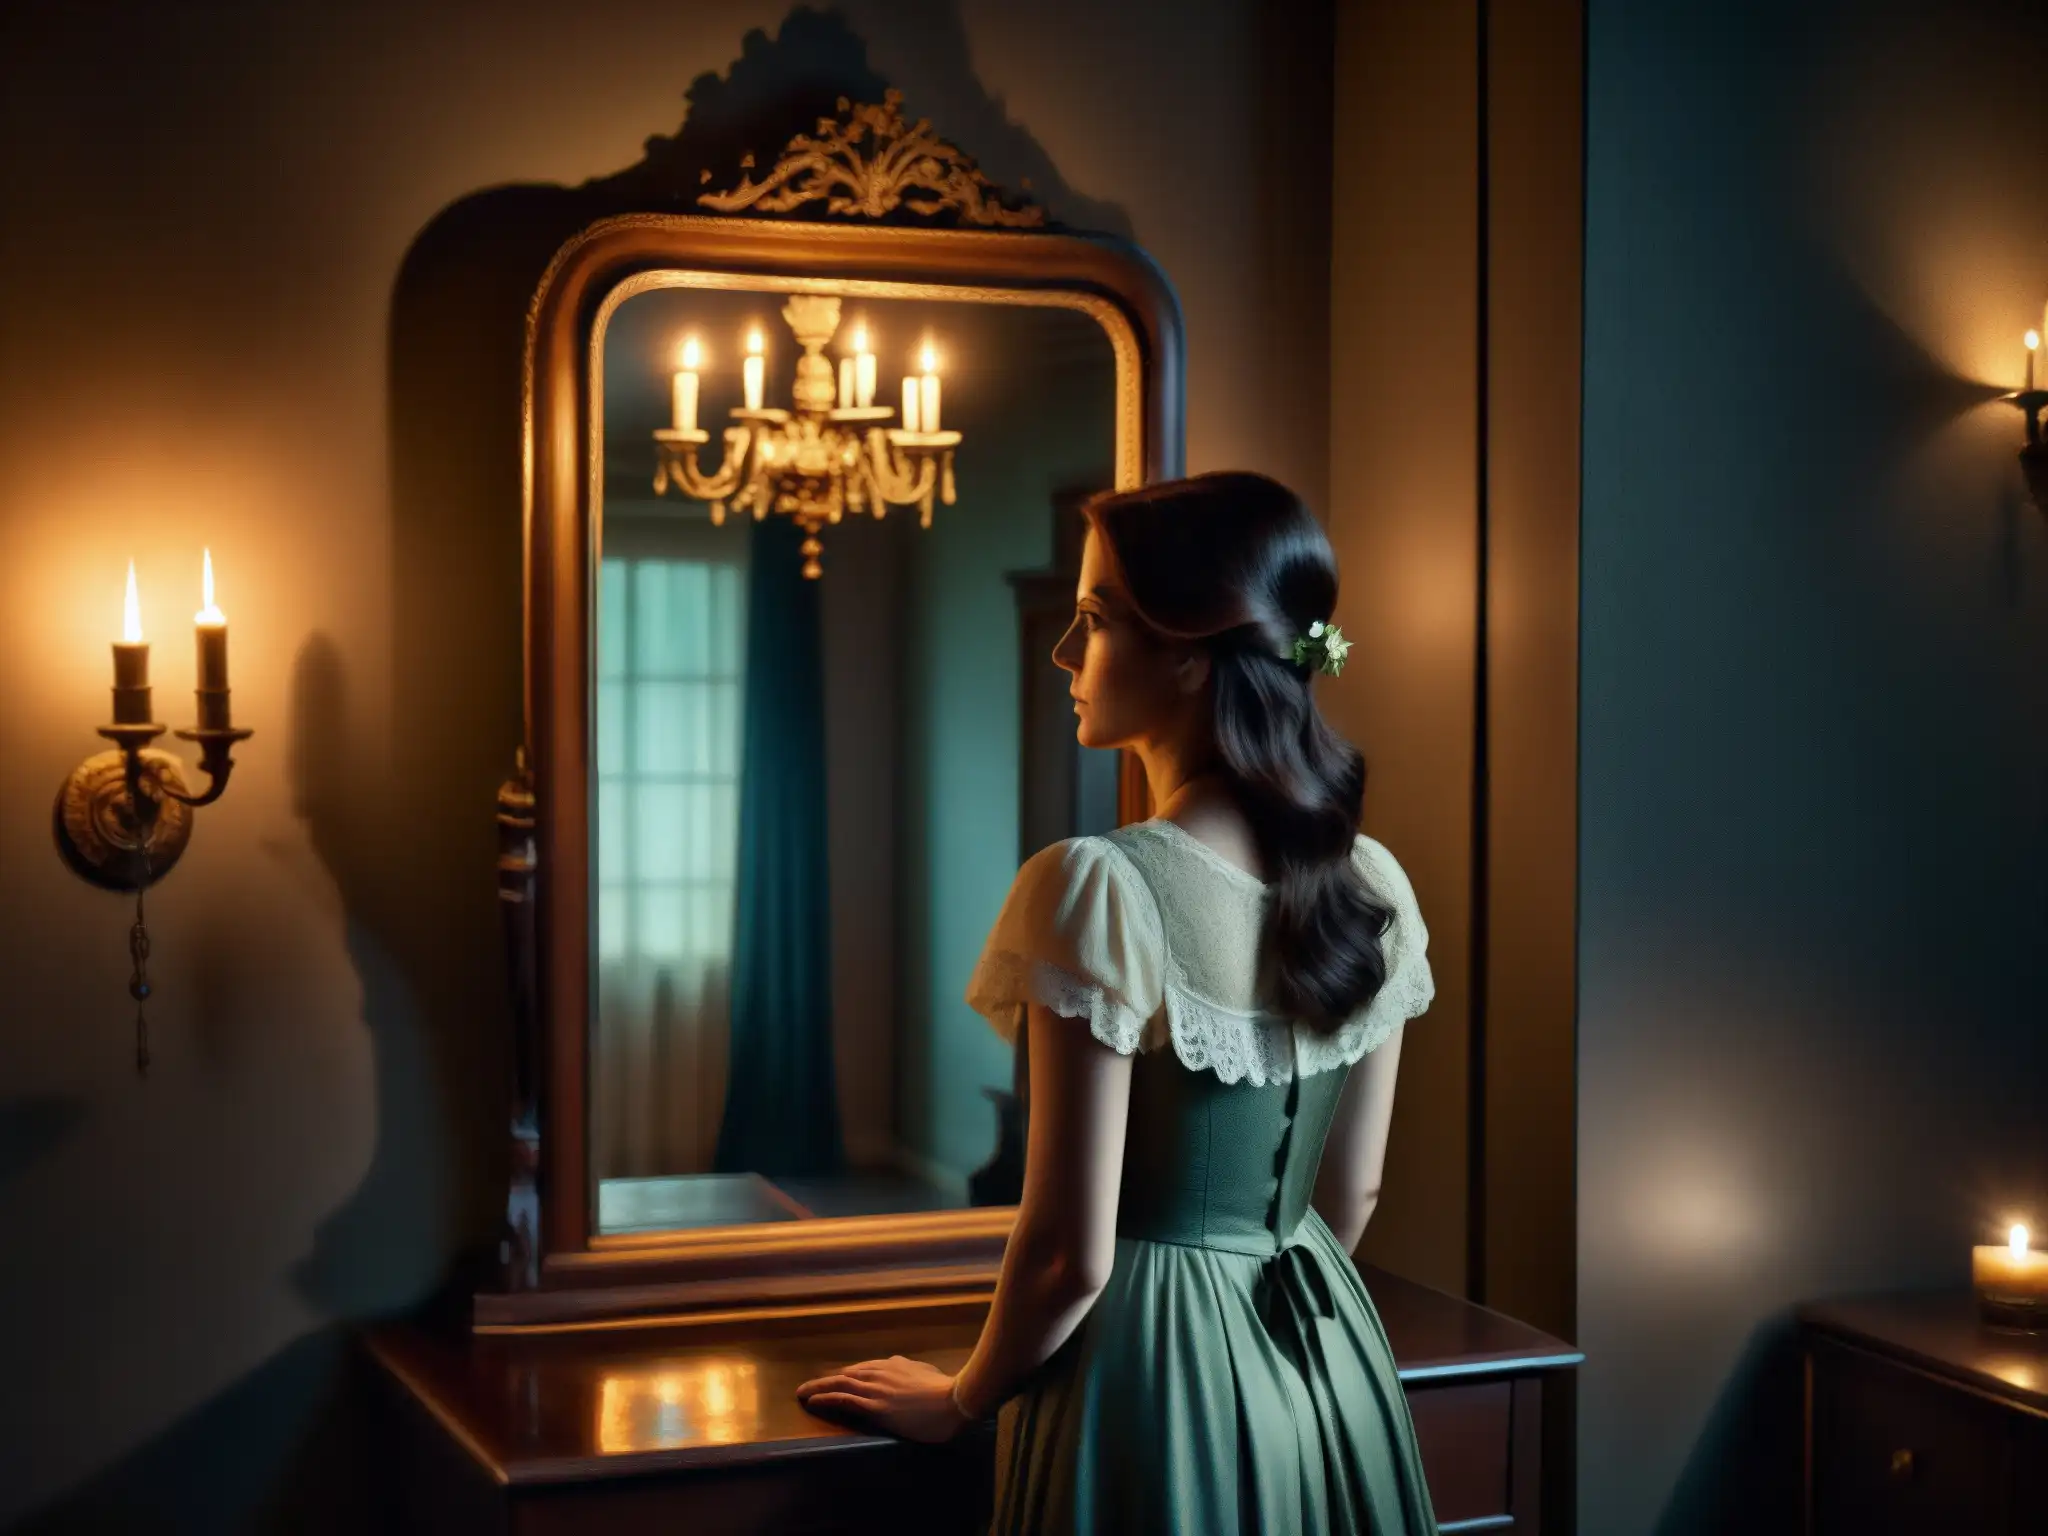 Reflejo fantasmal de una mujer en un espejo antiguo en una habitación oscura y misteriosa, evocando el origen histórico de Bloody Mary